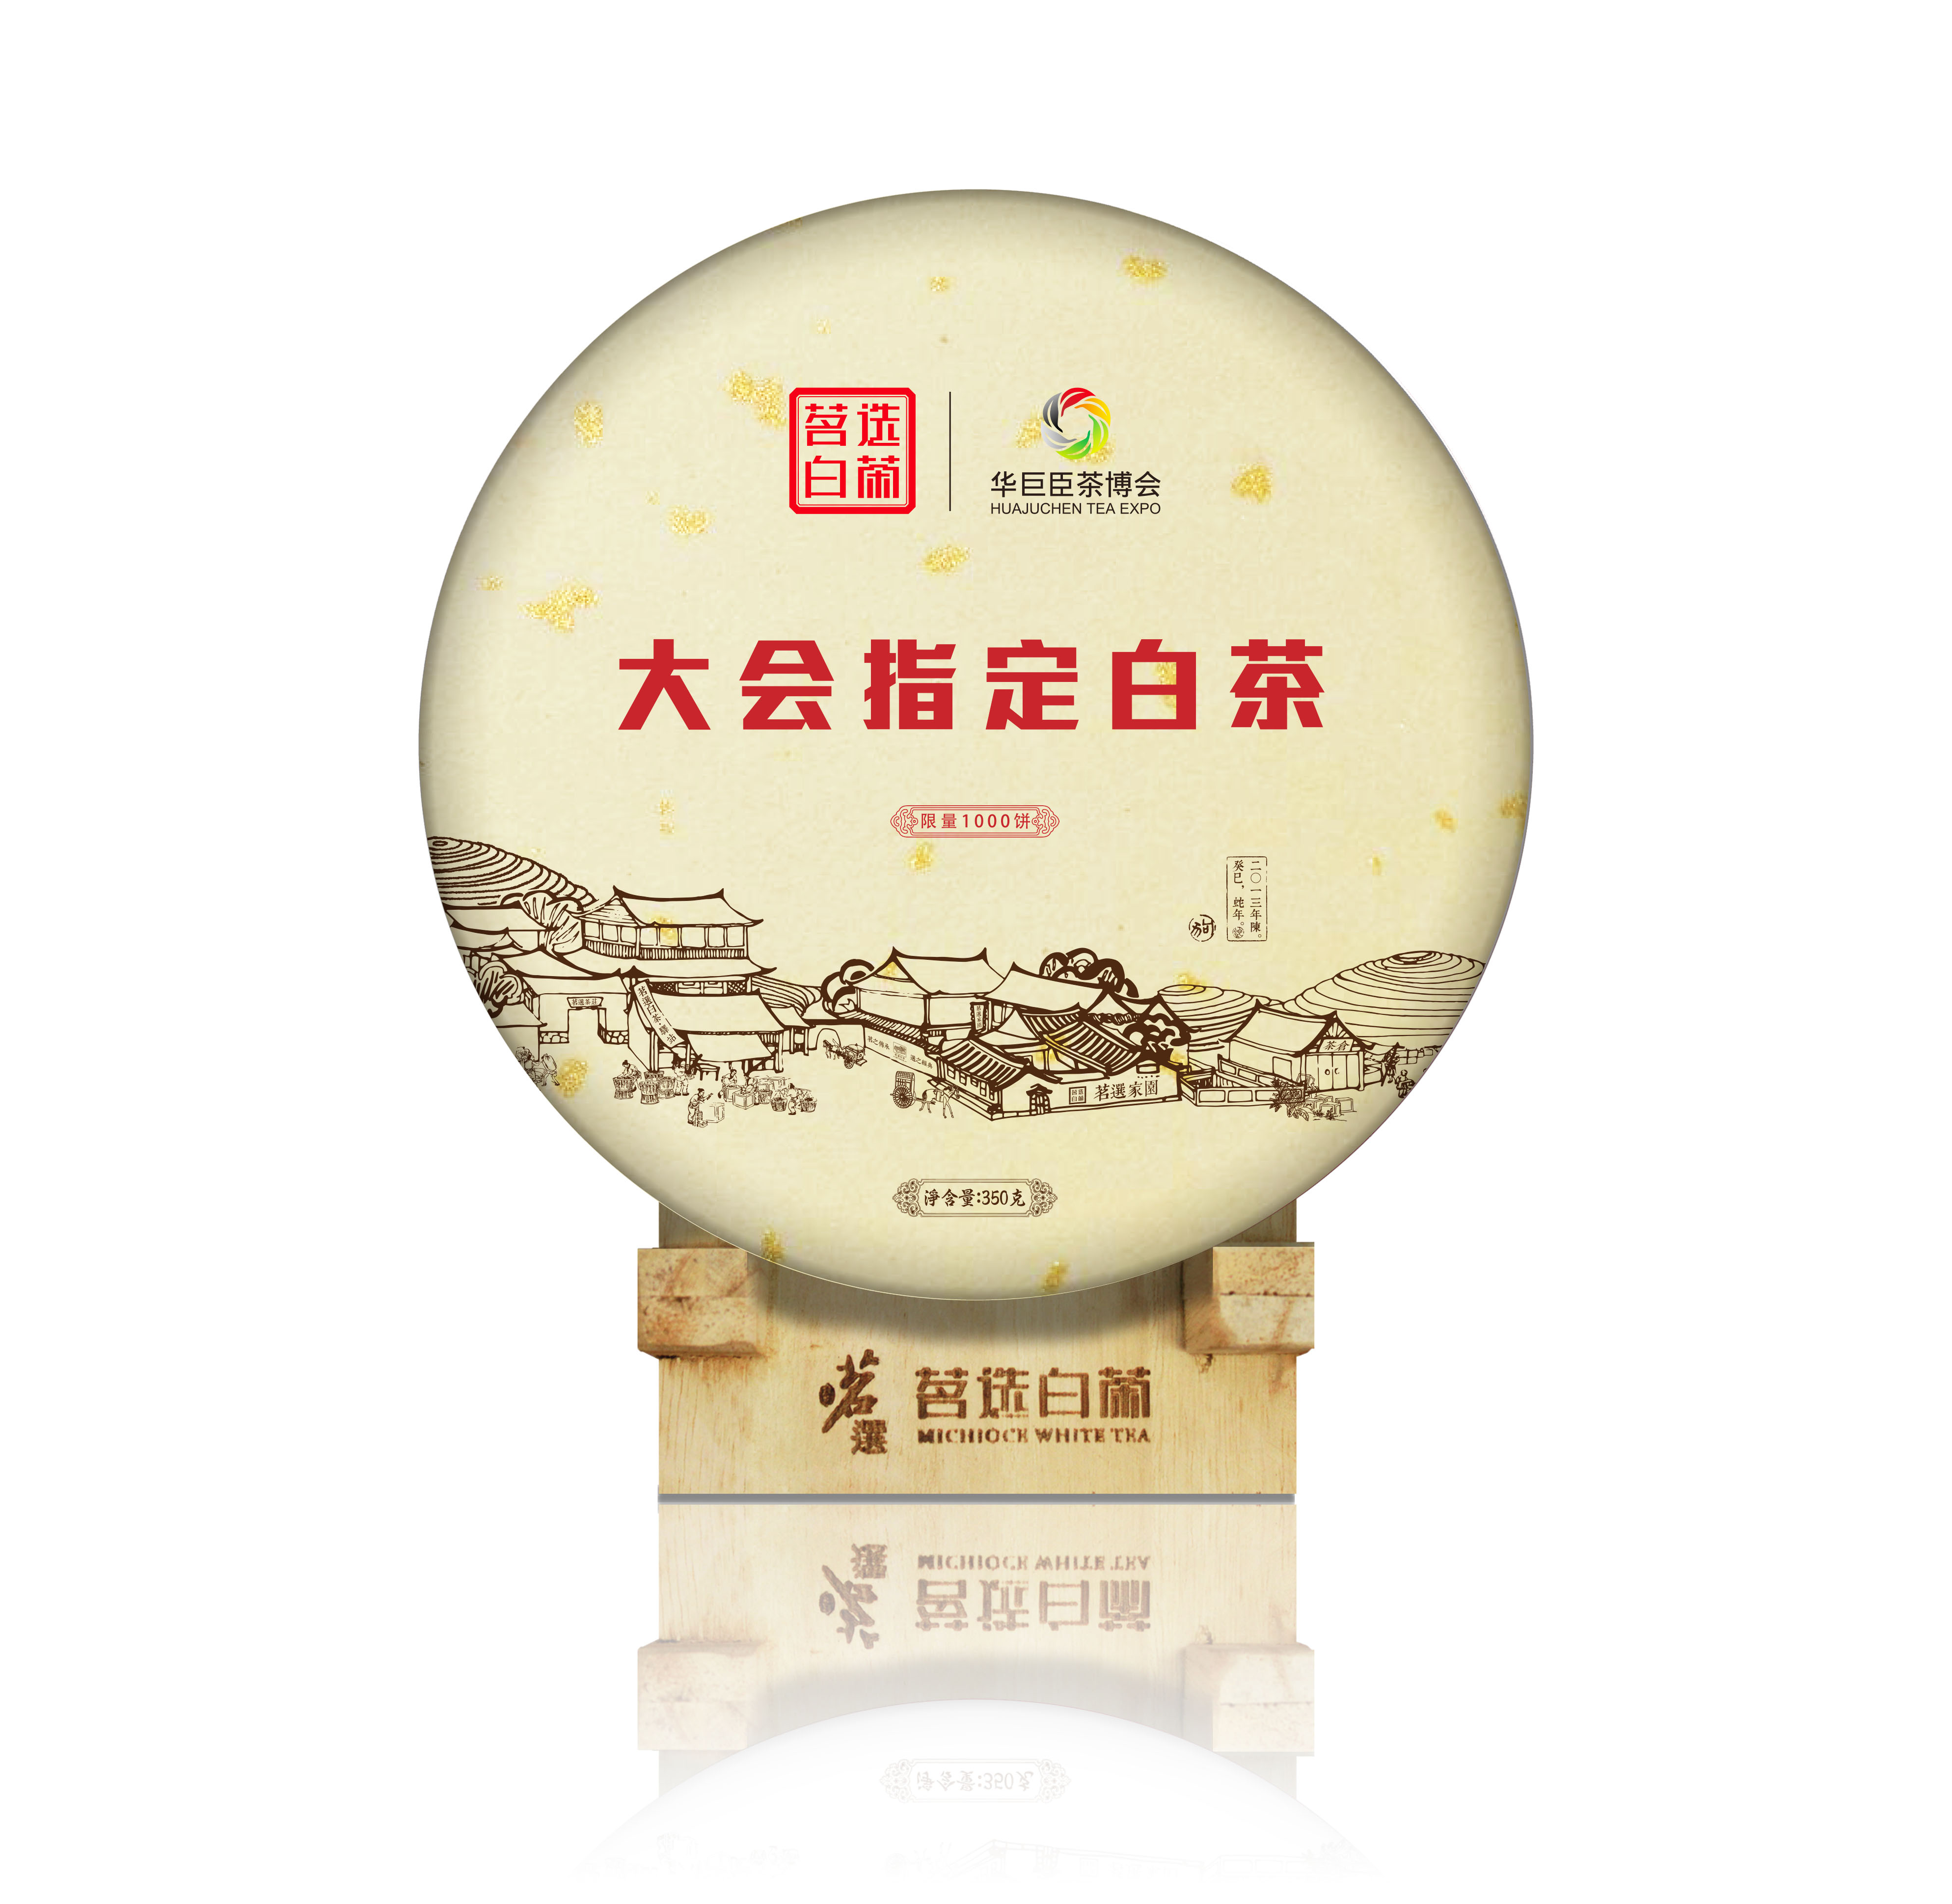 华巨臣茶产业博览会大会指定白茶